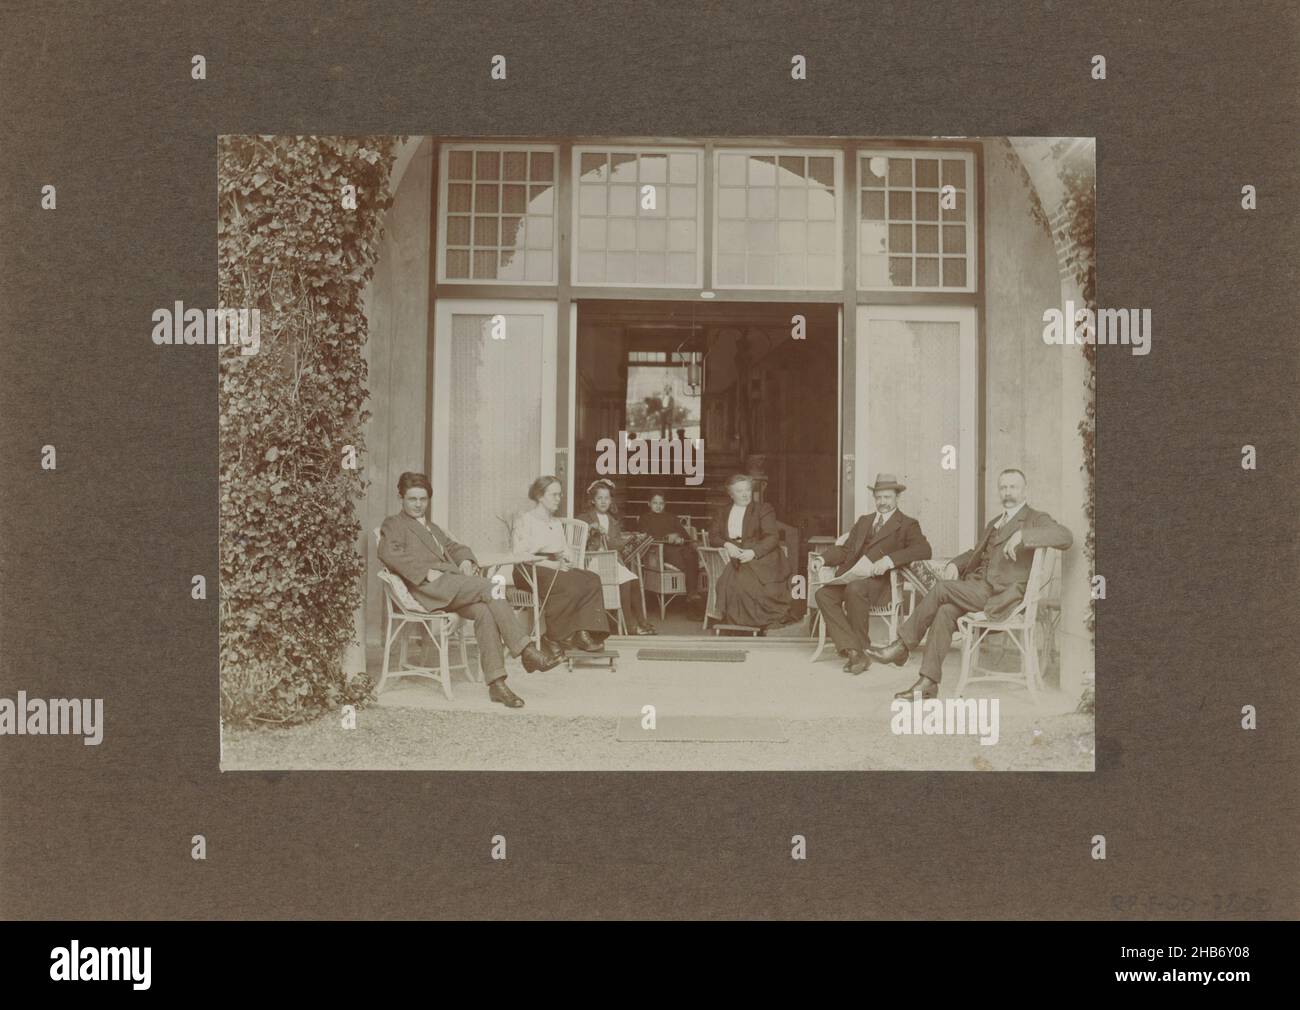 Männer, Frauen und Kinder posieren bei der Veranda, im Hintergrund ist der Fotograf im Spiegel sichtbar, anonym, c. 1900 - c. 1920, Karton, Papier, Höhe 117 mm × Breite 161 mm Stockfoto